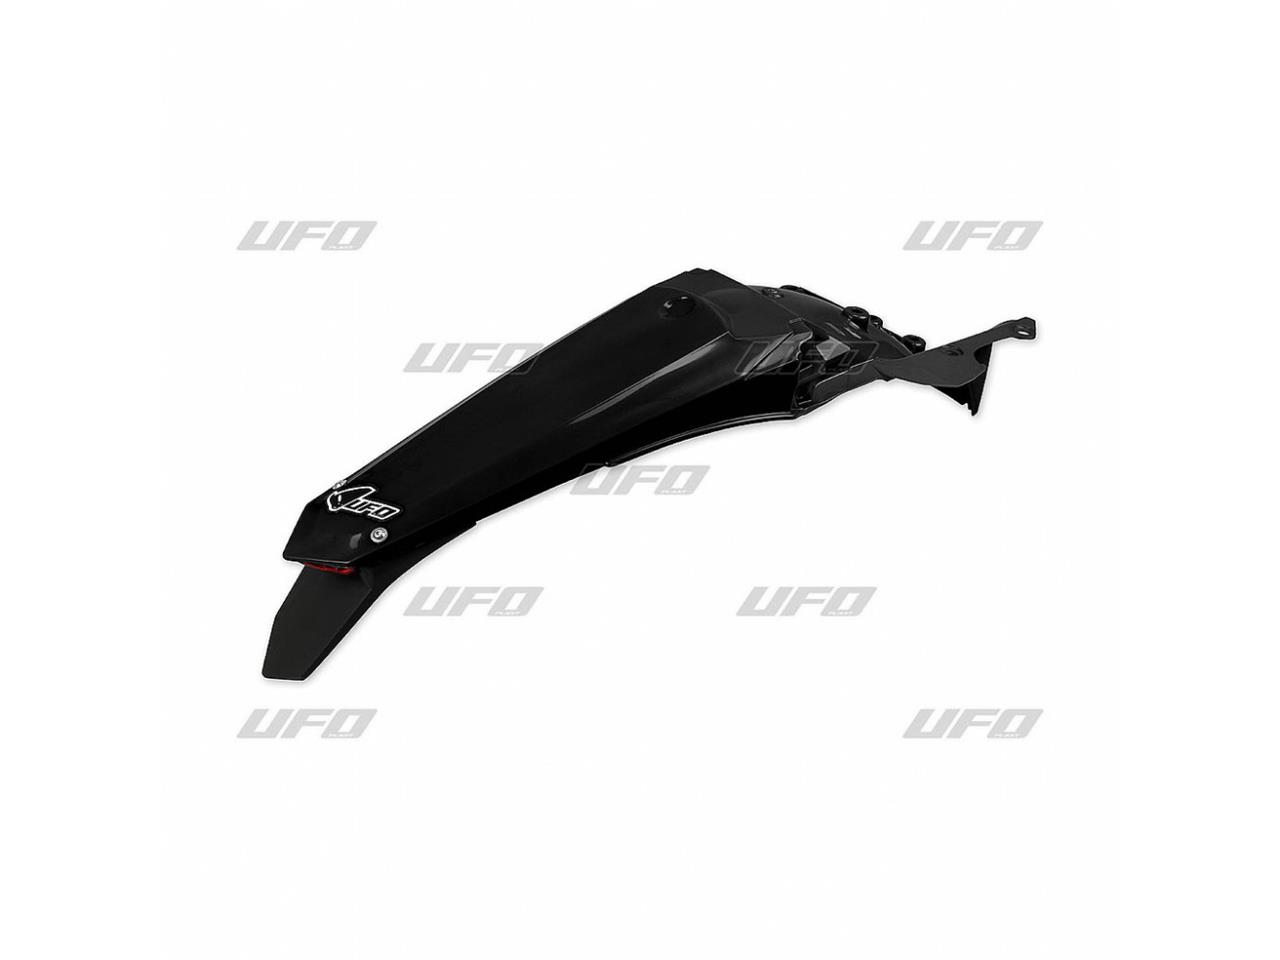 Garde-boue arrière + support de plaque avec feu marque UFO couleur noir